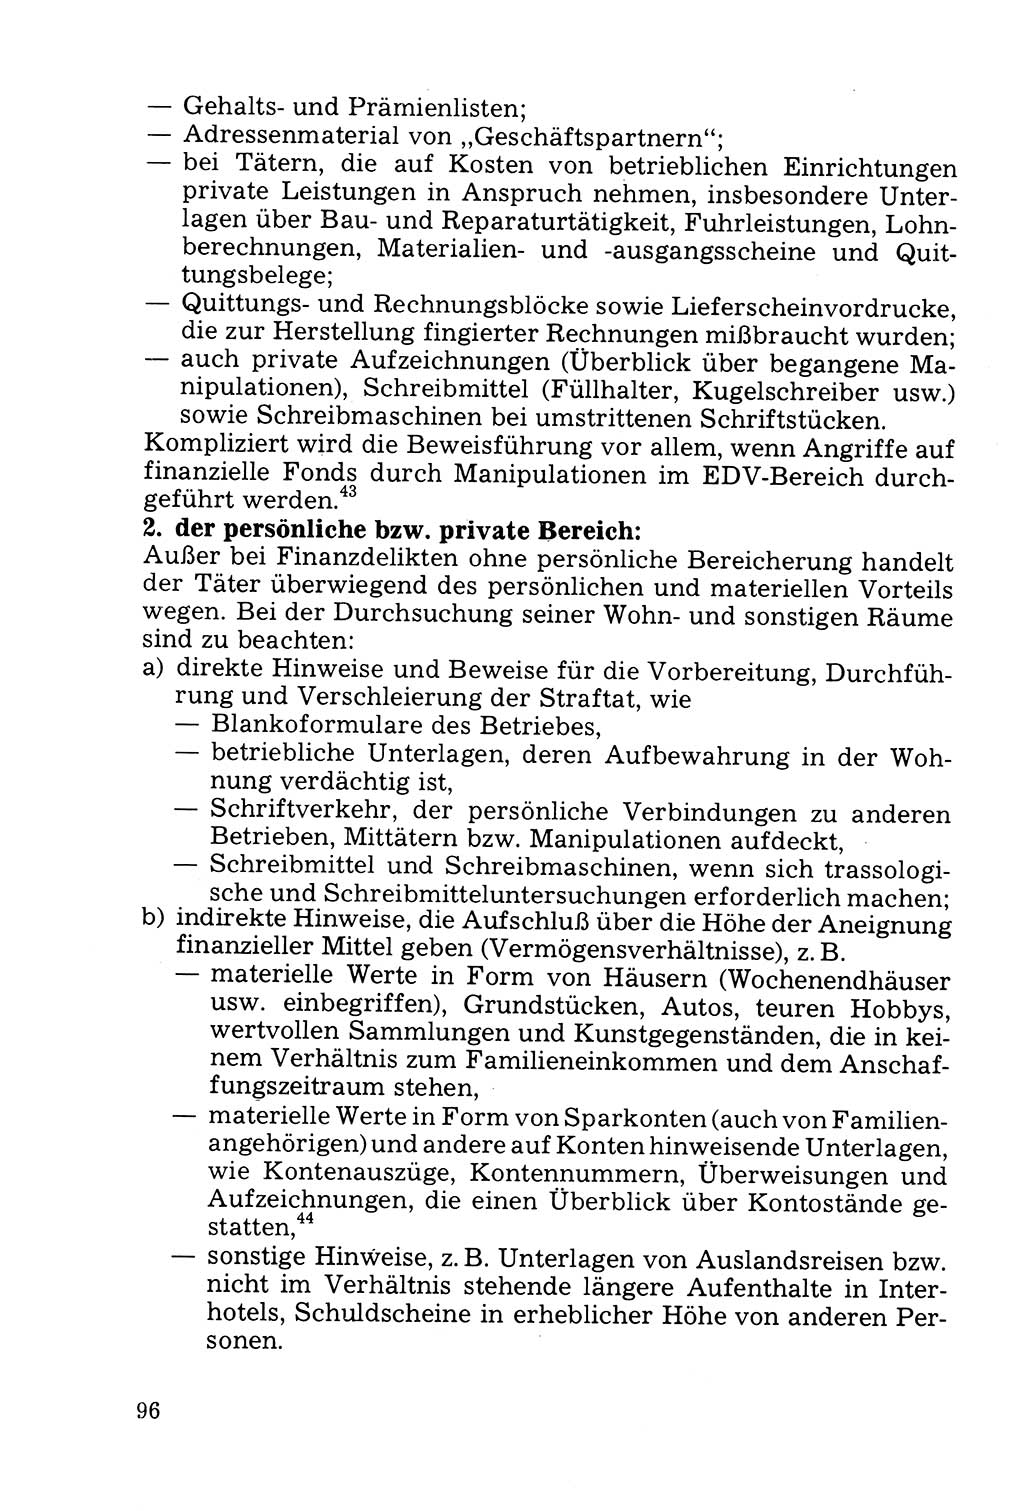 Die Durchsuchung und die Beschlagnahme [Deutsche Demokratische Republik (DDR)] 1979, Seite 96 (Durchs. Beschl. DDR 1979, S. 96)